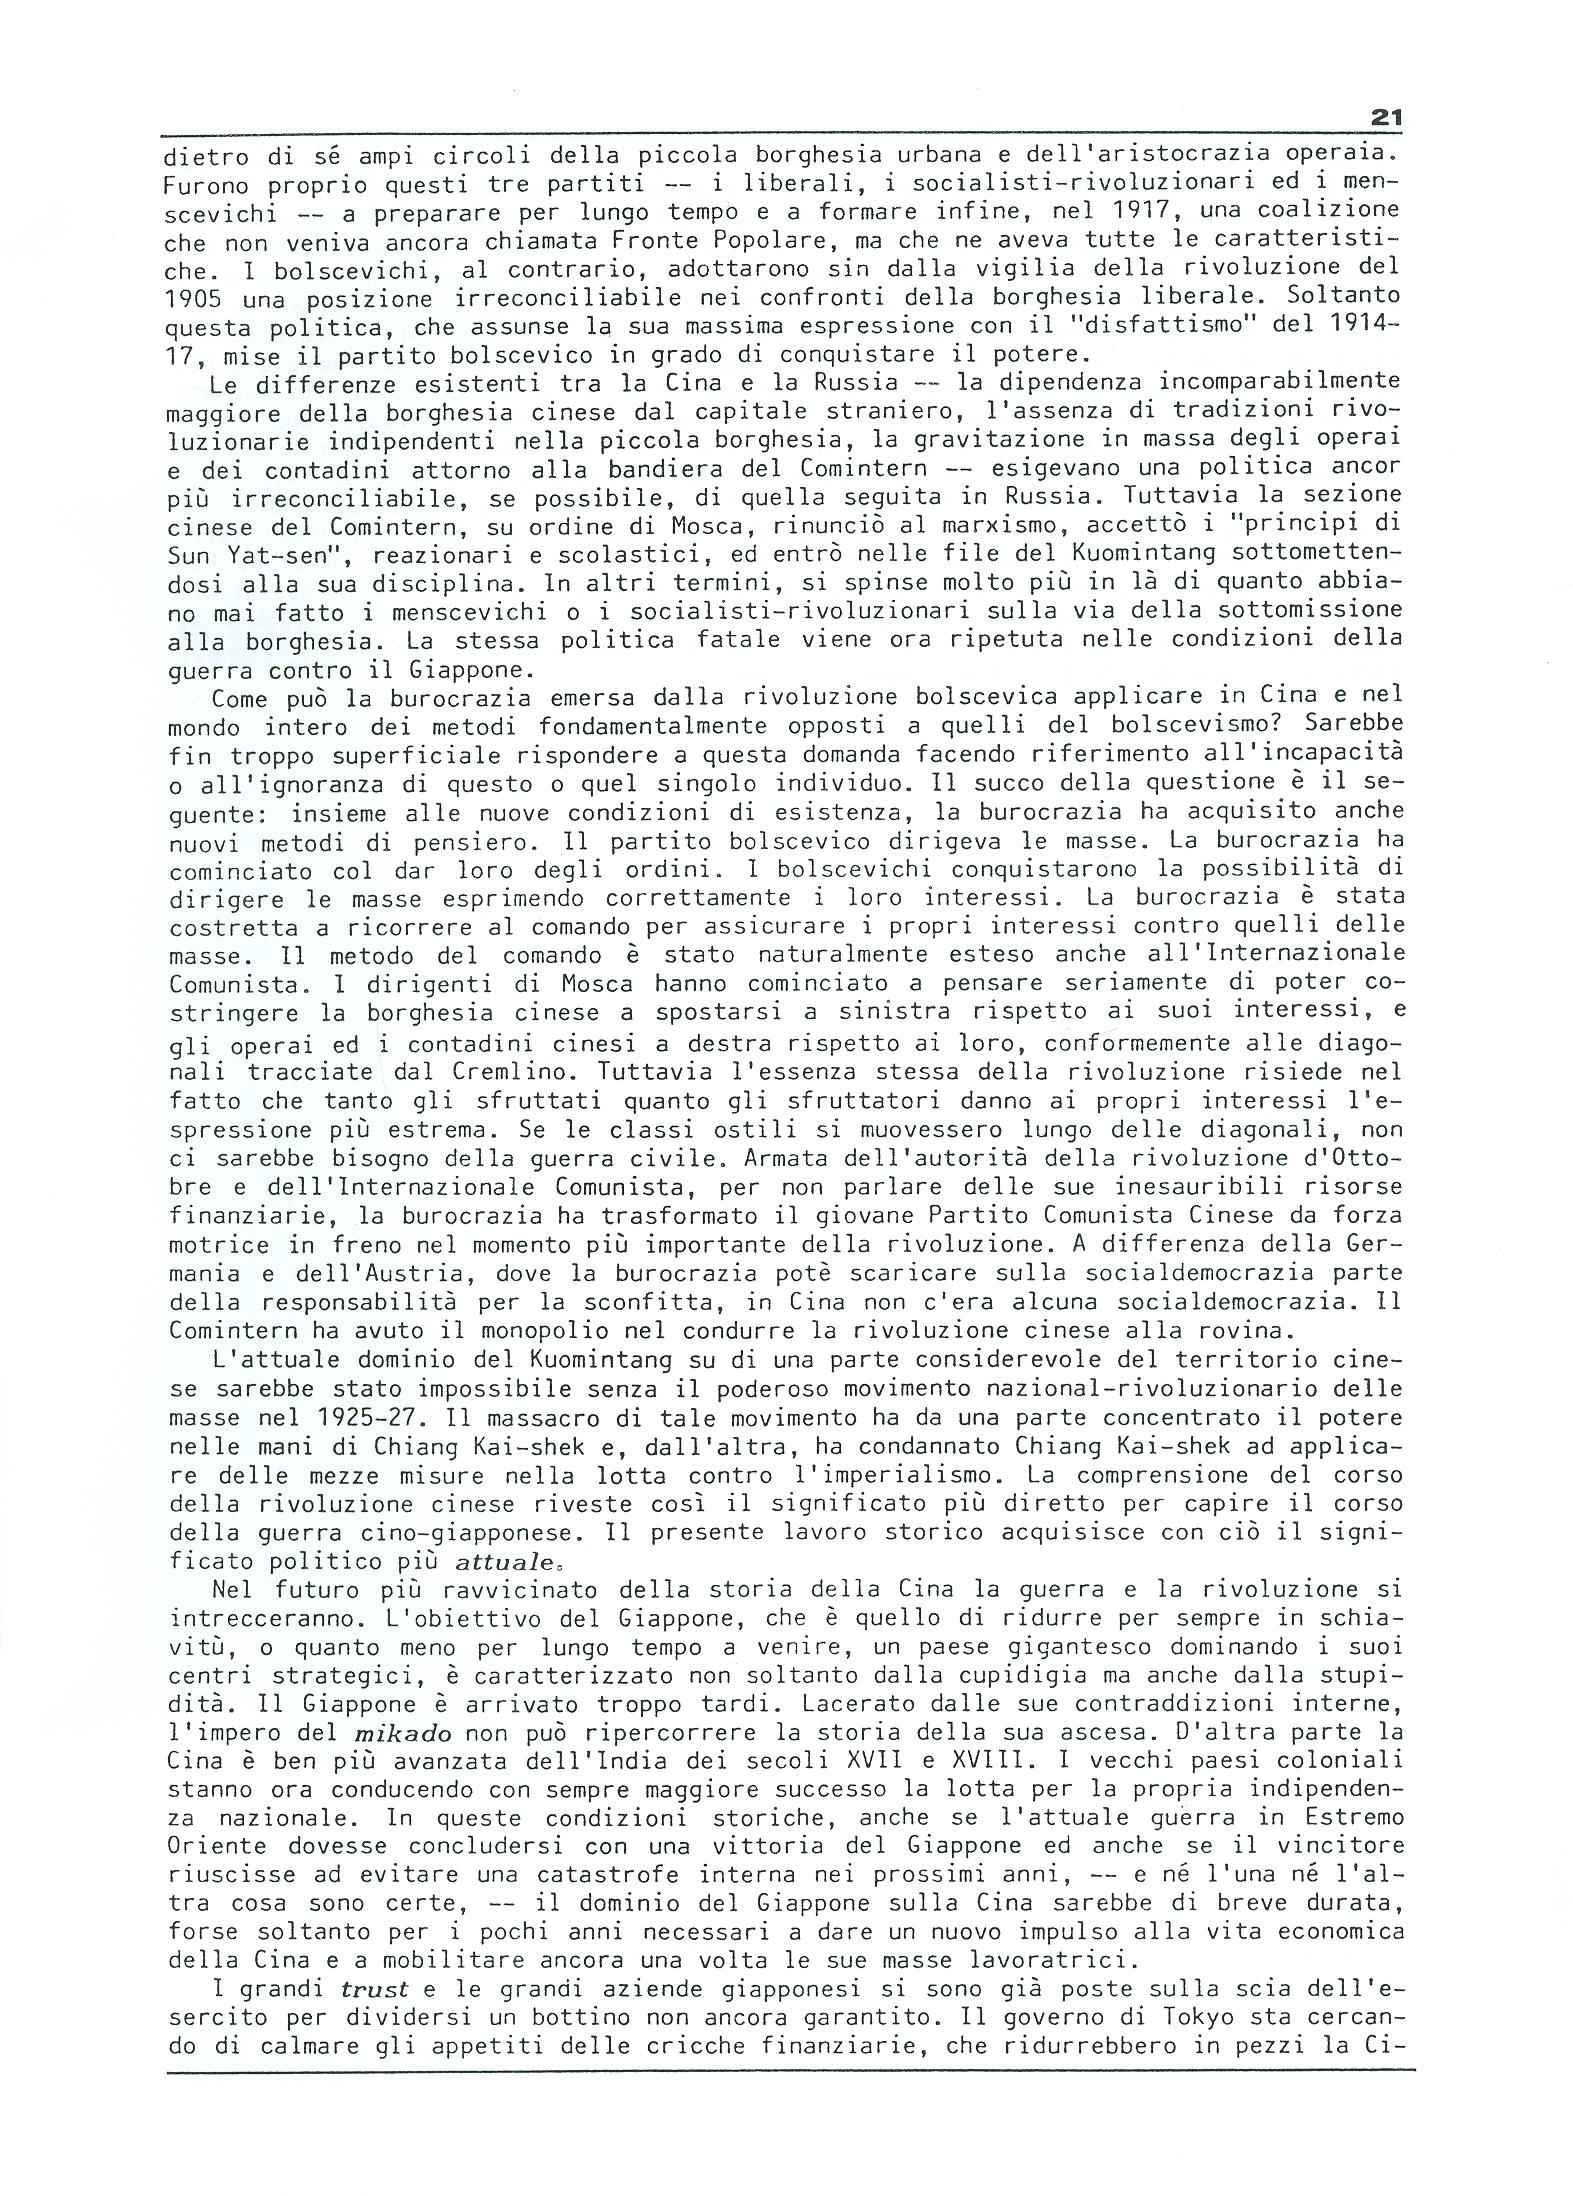 Studi e Ricerche n. 18 (aprile 1990) - pag. 21